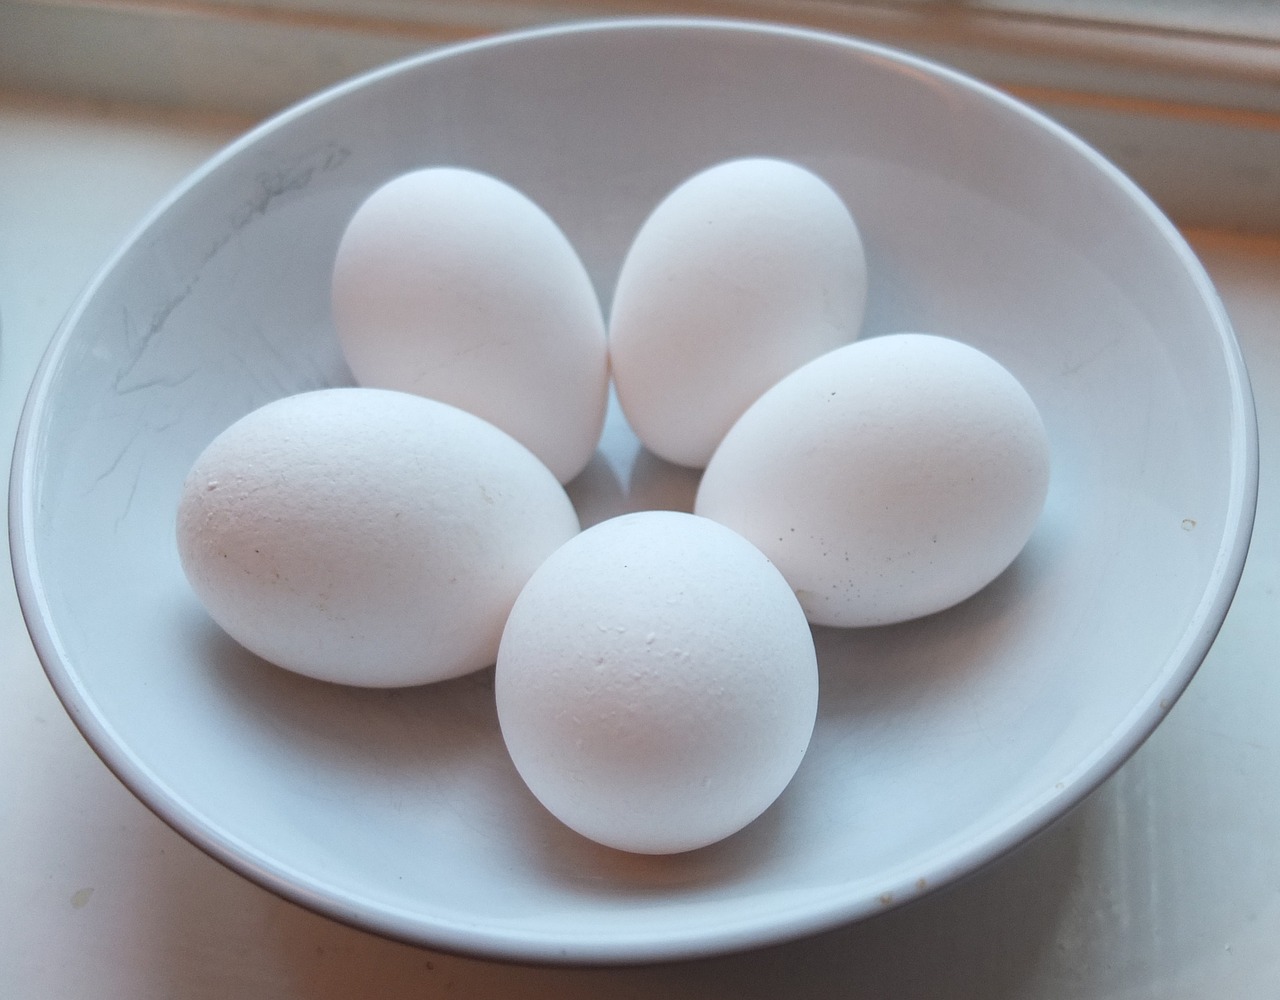 eggs dish white free photo